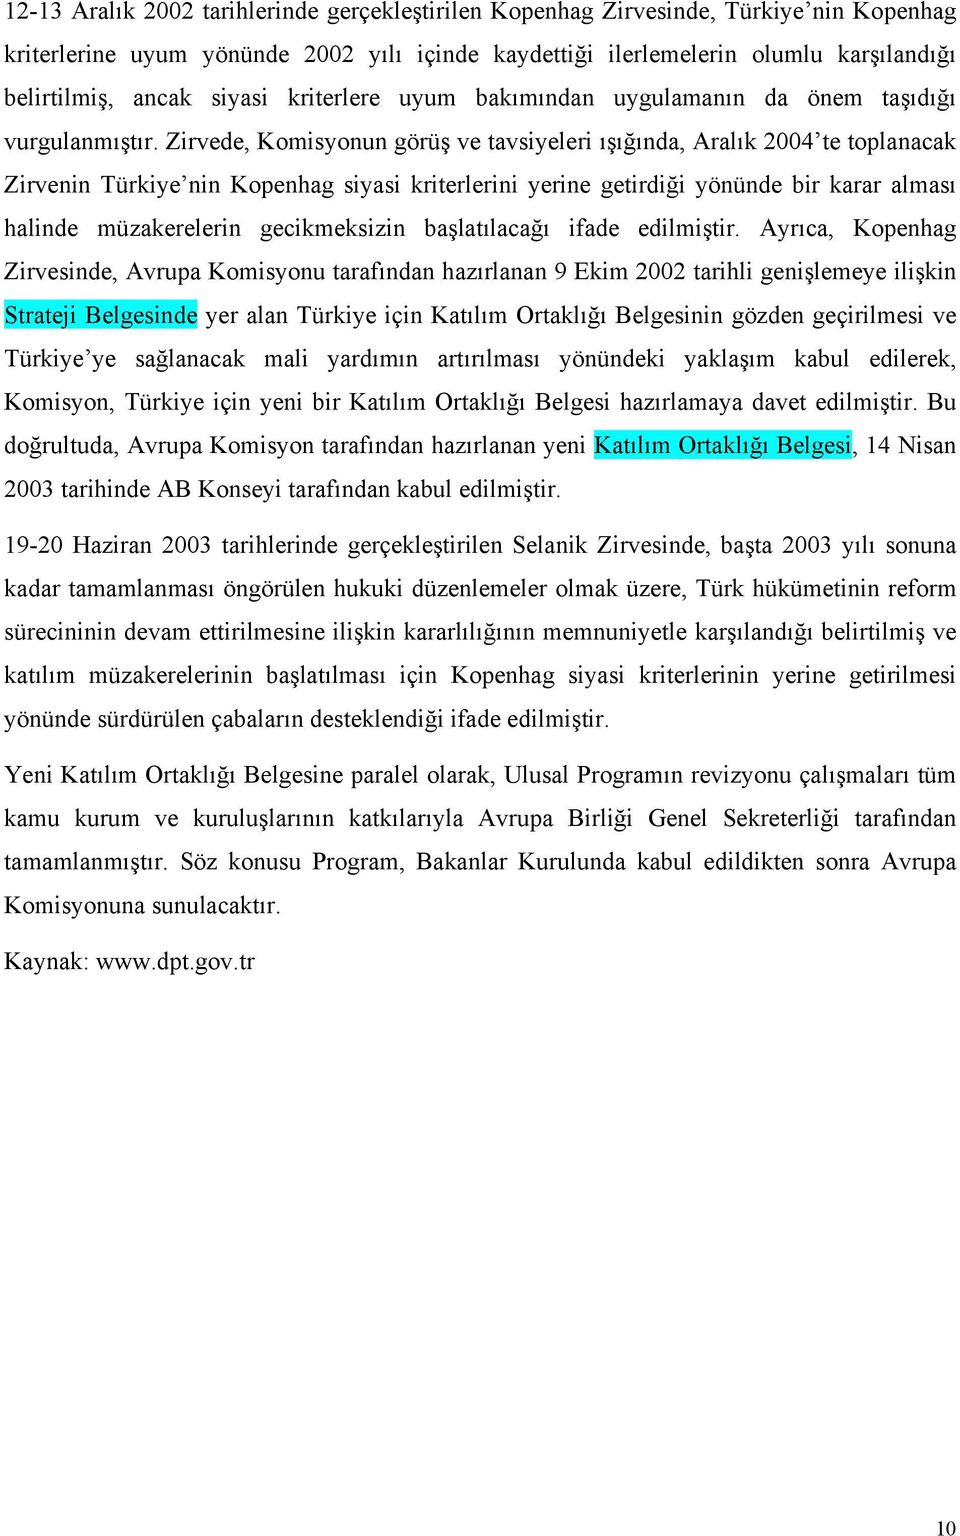 Zirvede, Komisyonun görüş ve tavsiyeleri ışığında, Aralık 2004 te toplanacak Zirvenin Türkiye nin Kopenhag siyasi kriterlerini yerine getirdiği yönünde bir karar alması halinde müzakerelerin